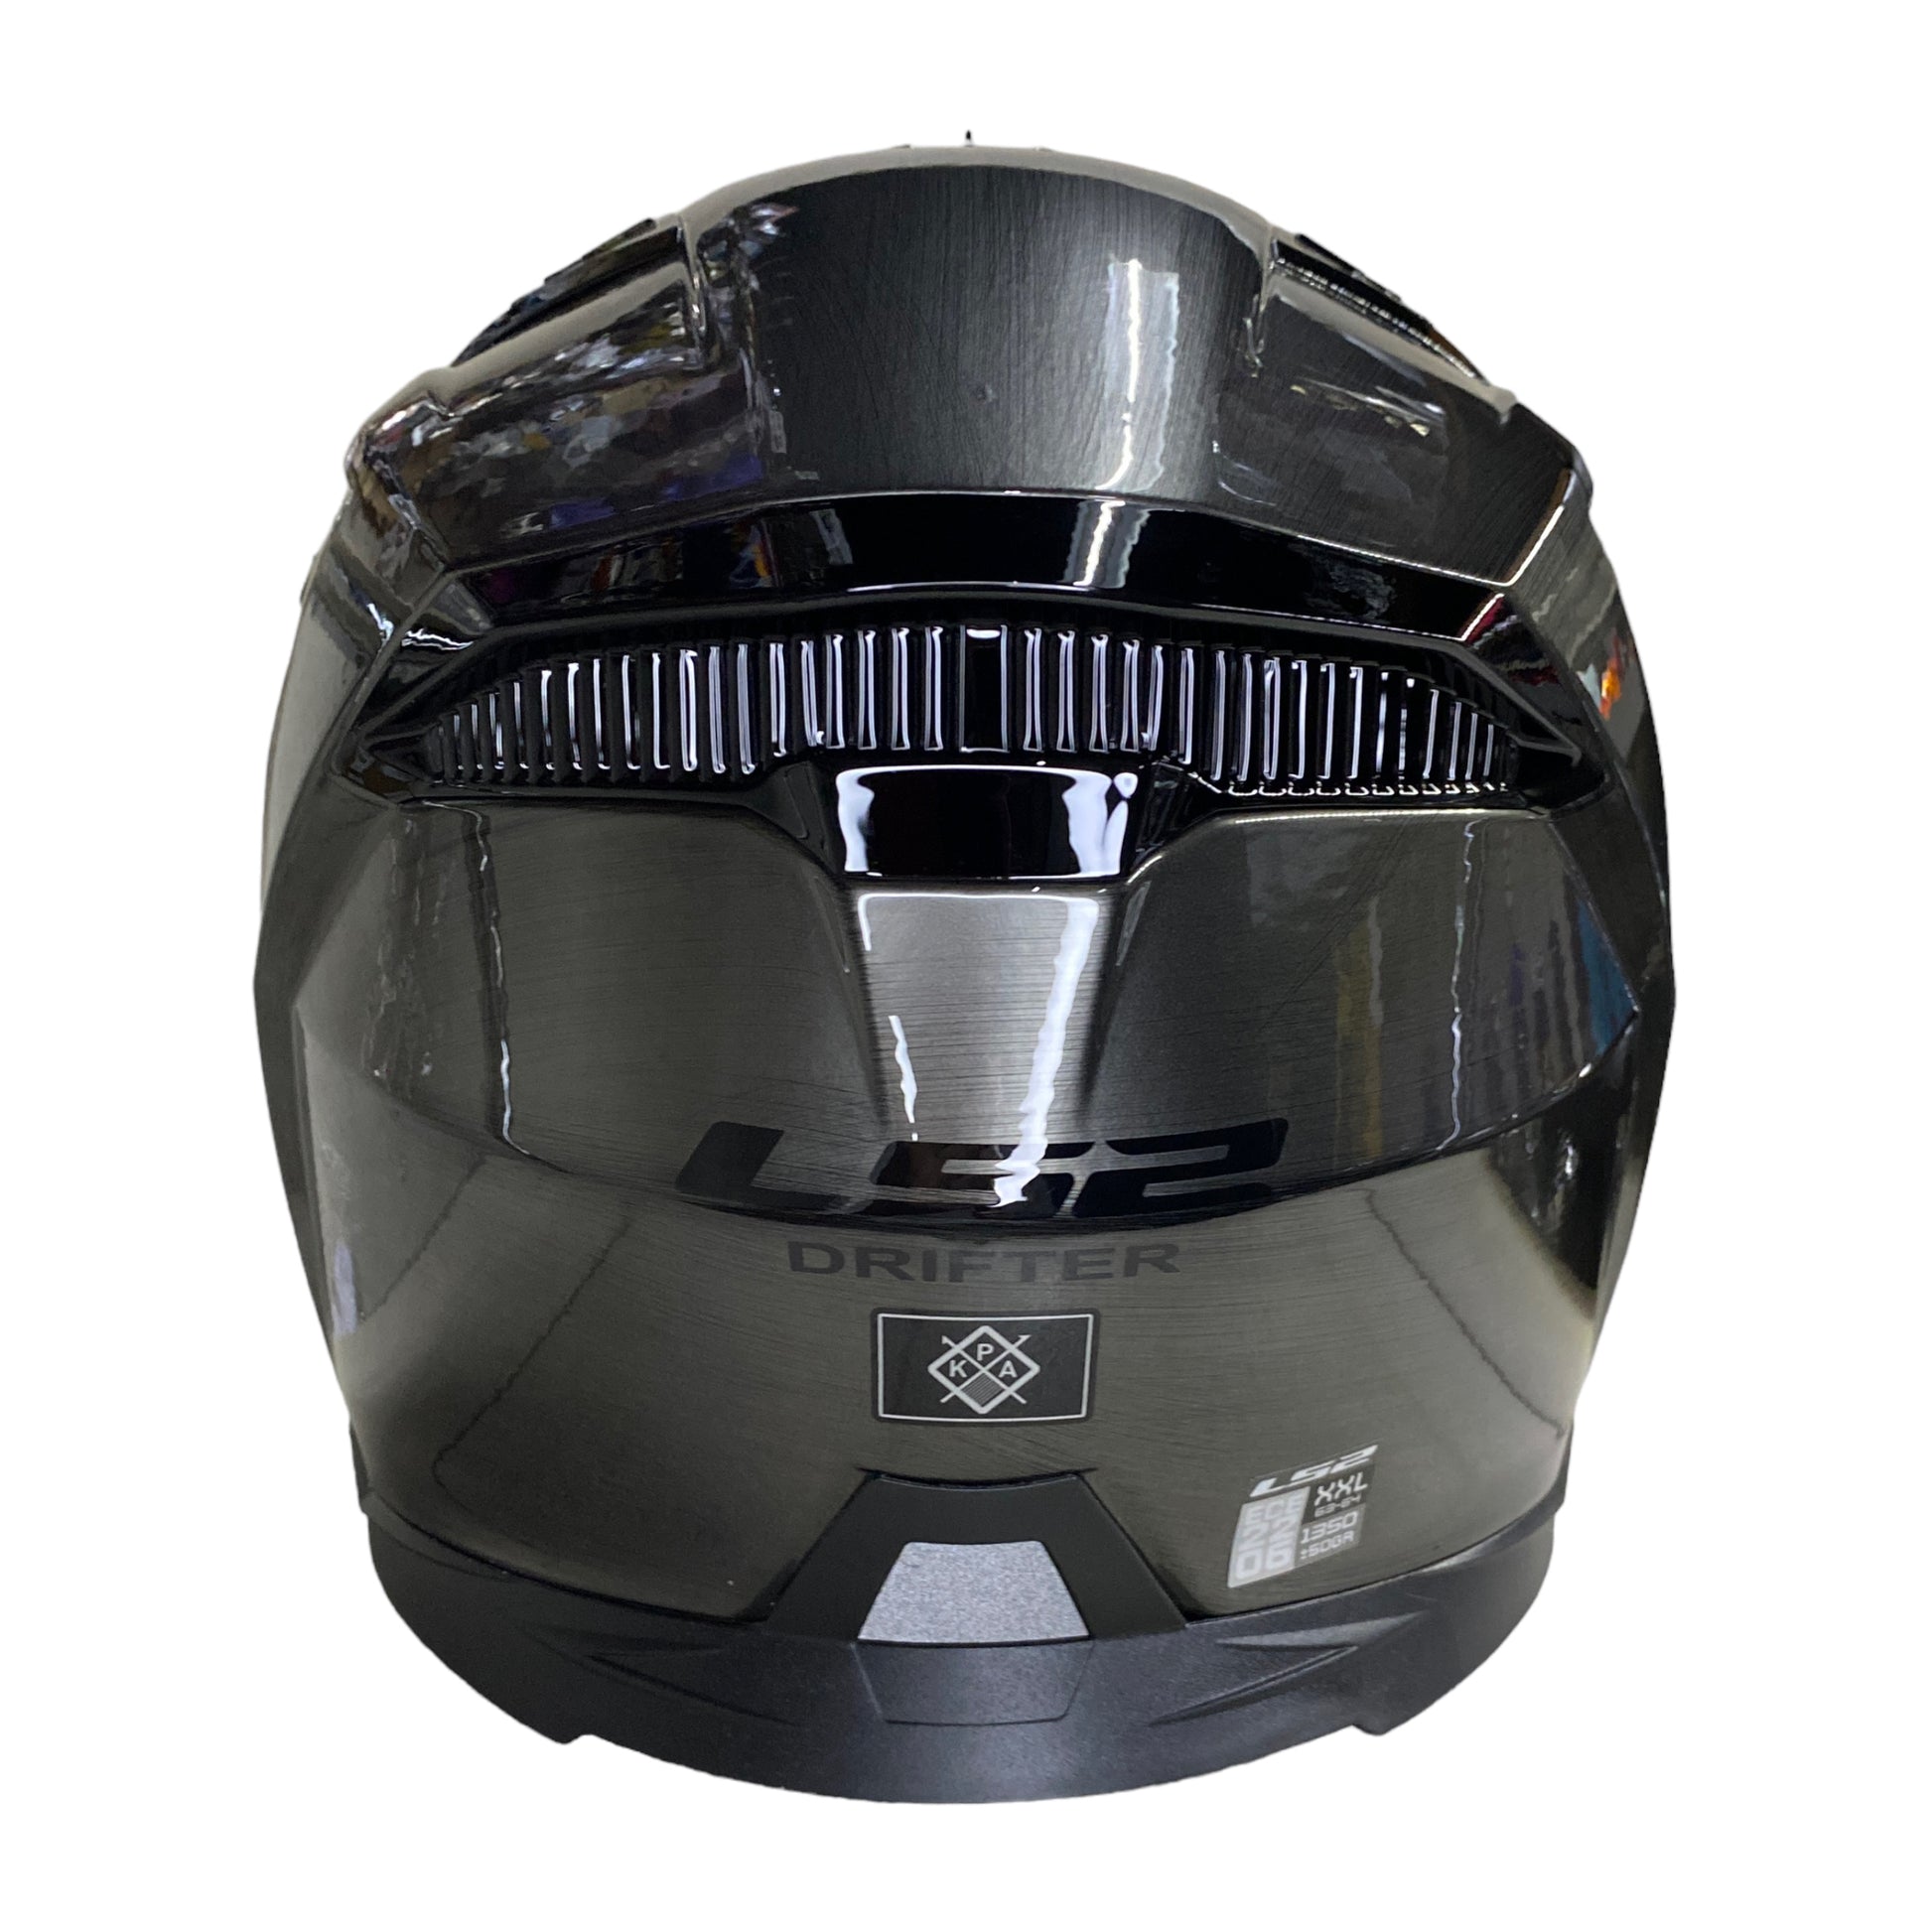 LS2 Helmets Costa Rica - Un casco modular diseñado para viajes en  motocicletas deportivas o de turismo, con características que han sido  desarrollados con la mejor tecnología. • Certificación: ECE 22.05 •